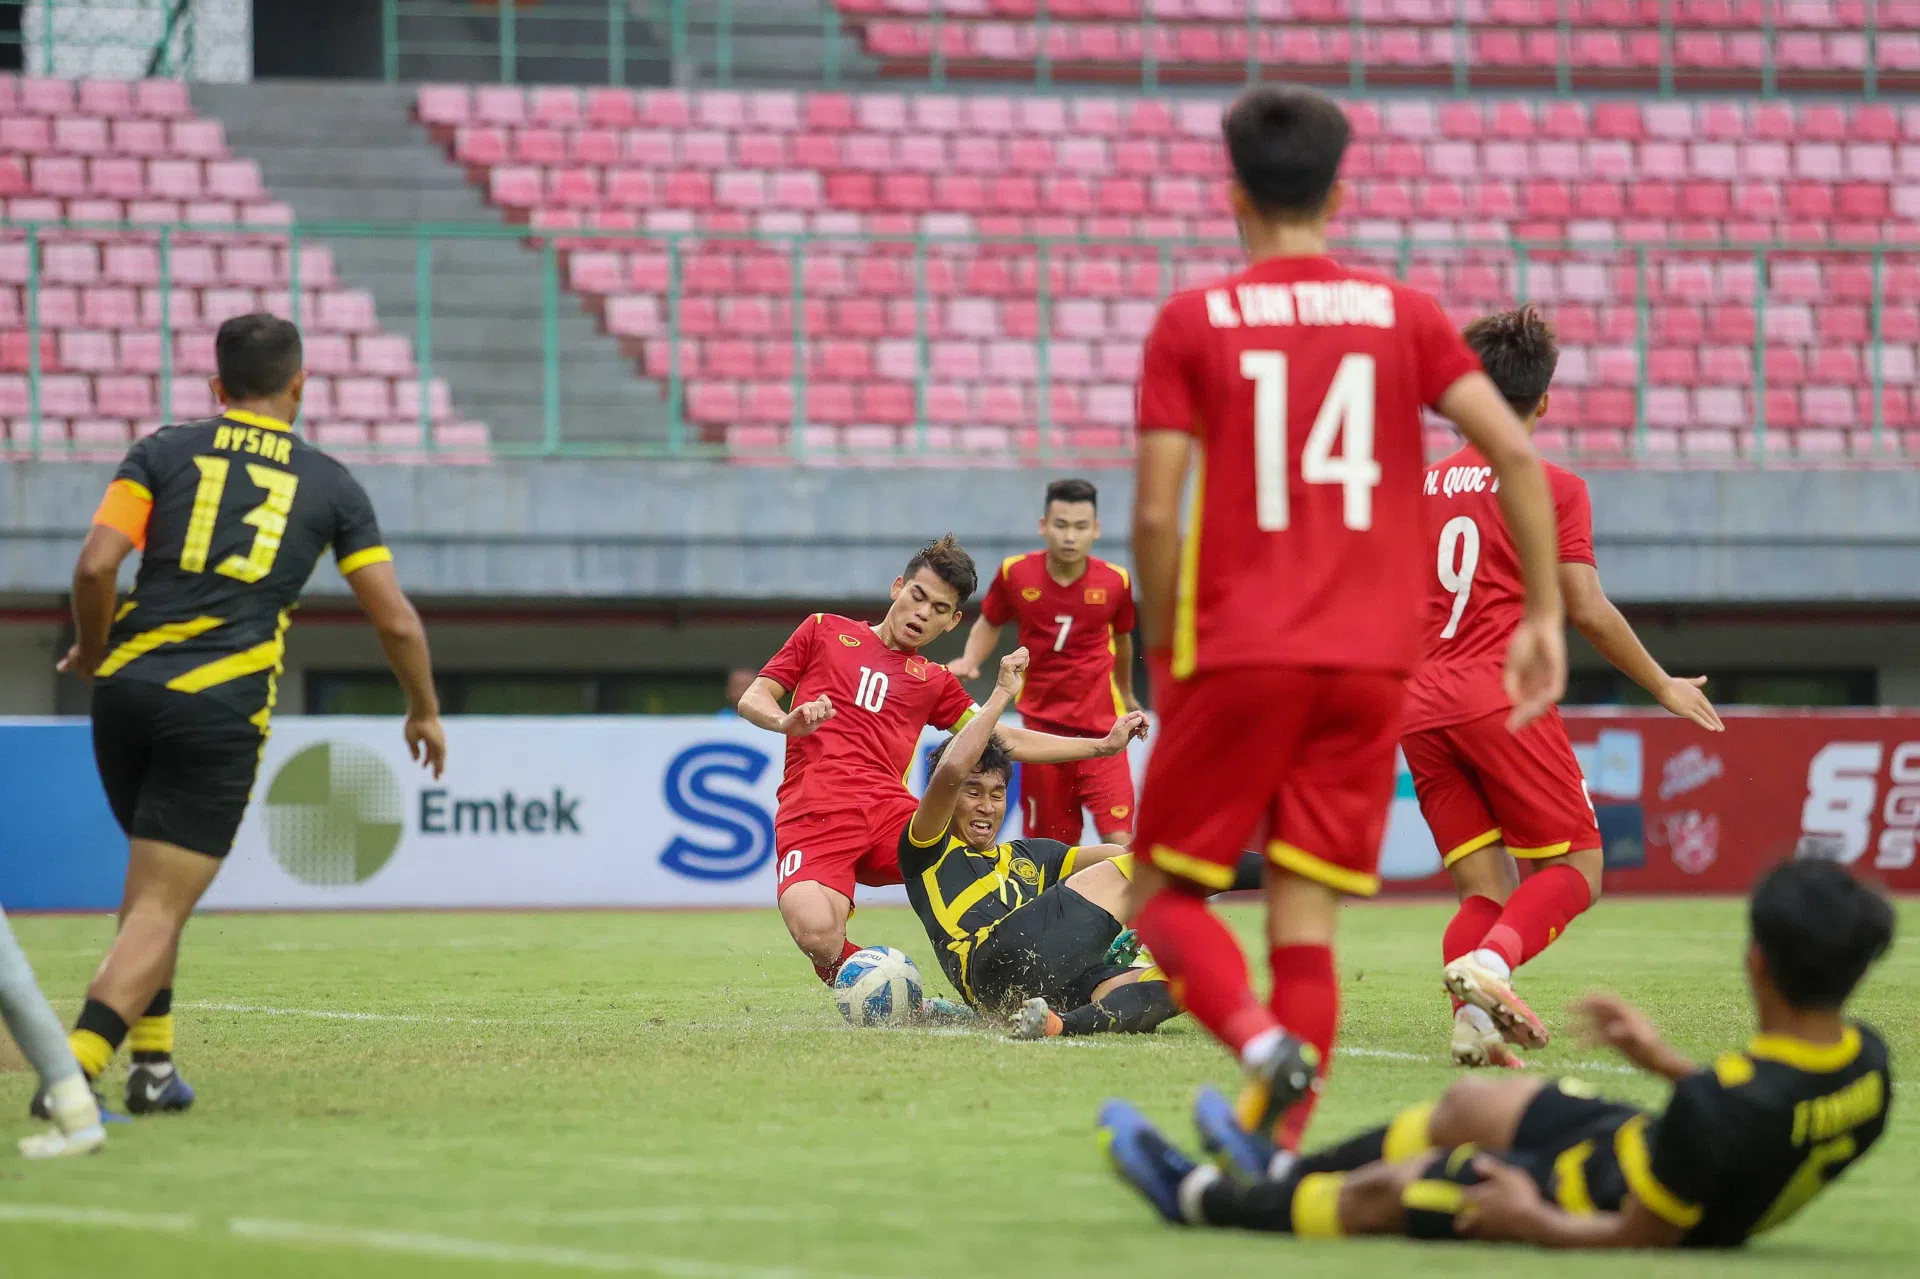 Vượt qua thất bại, U19 Việt Nam hướng đến mục tiêu mới tại giải châu Á